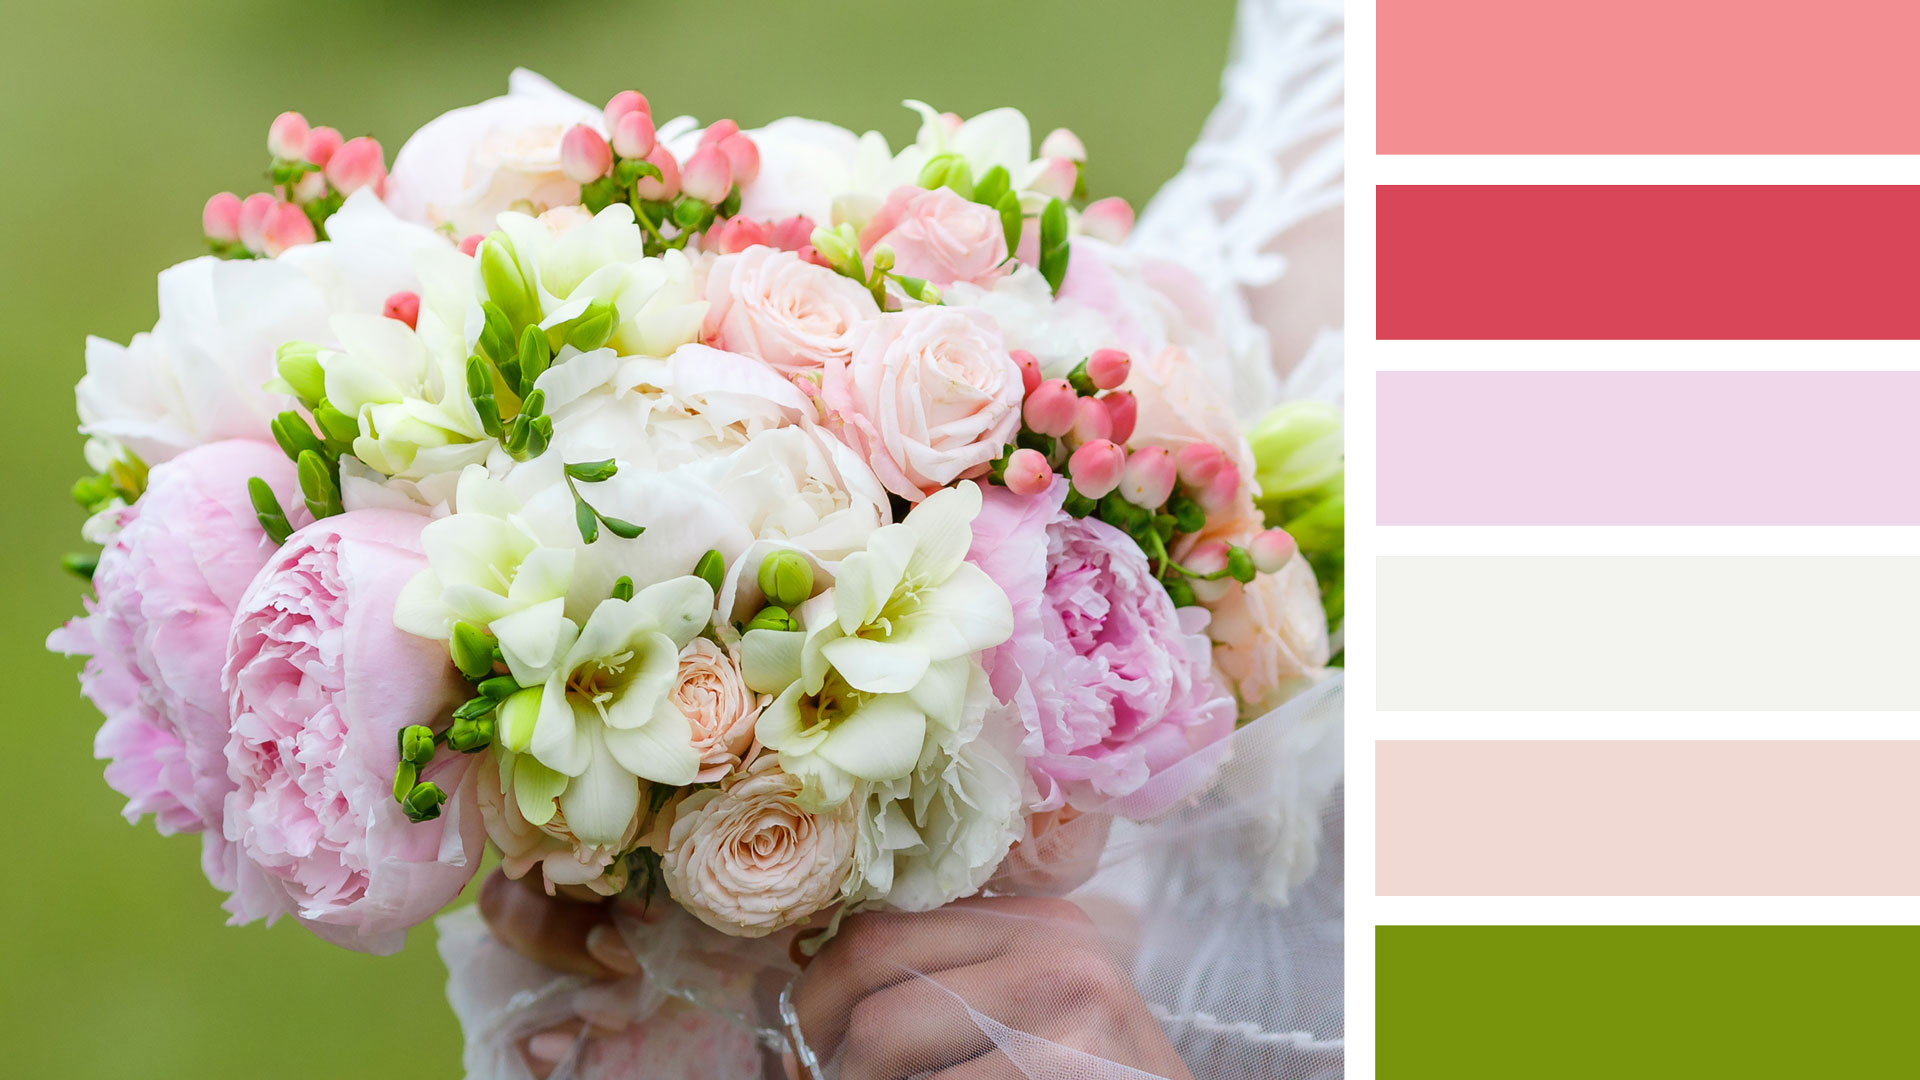 Рецепт свадебного букета круглой формы. Палитра: розовый, белый, кремовый, зеленый, красный, персиковый.